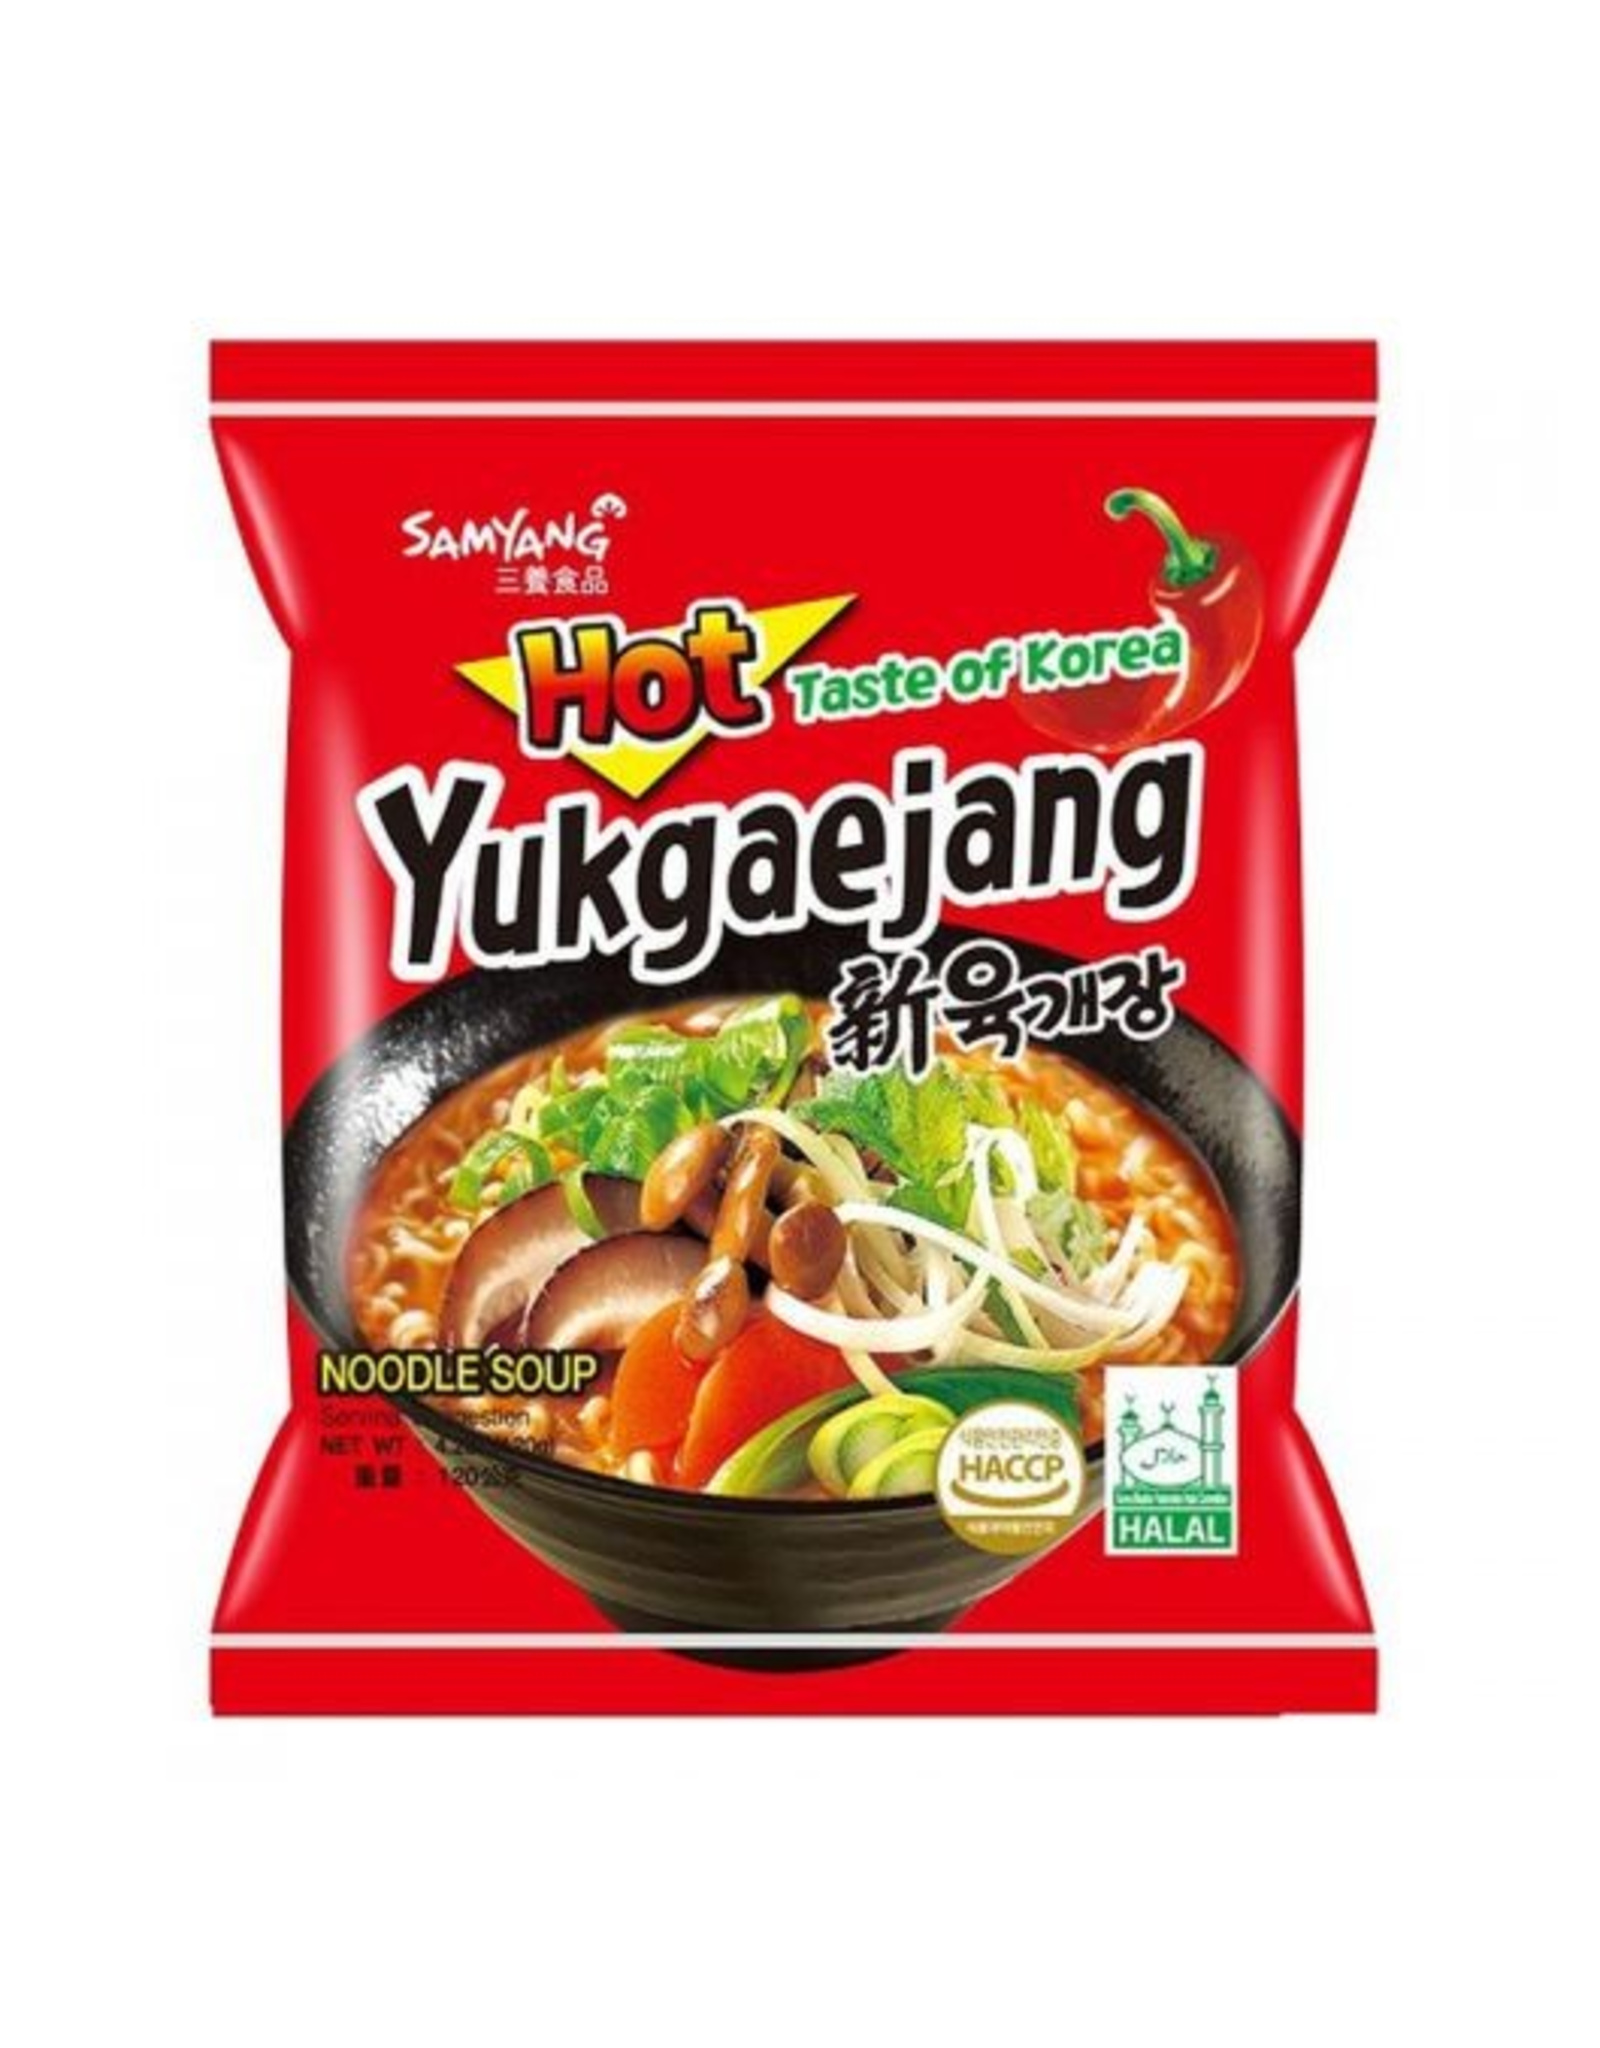 Samyang Yukgaejang Hot Mushroom